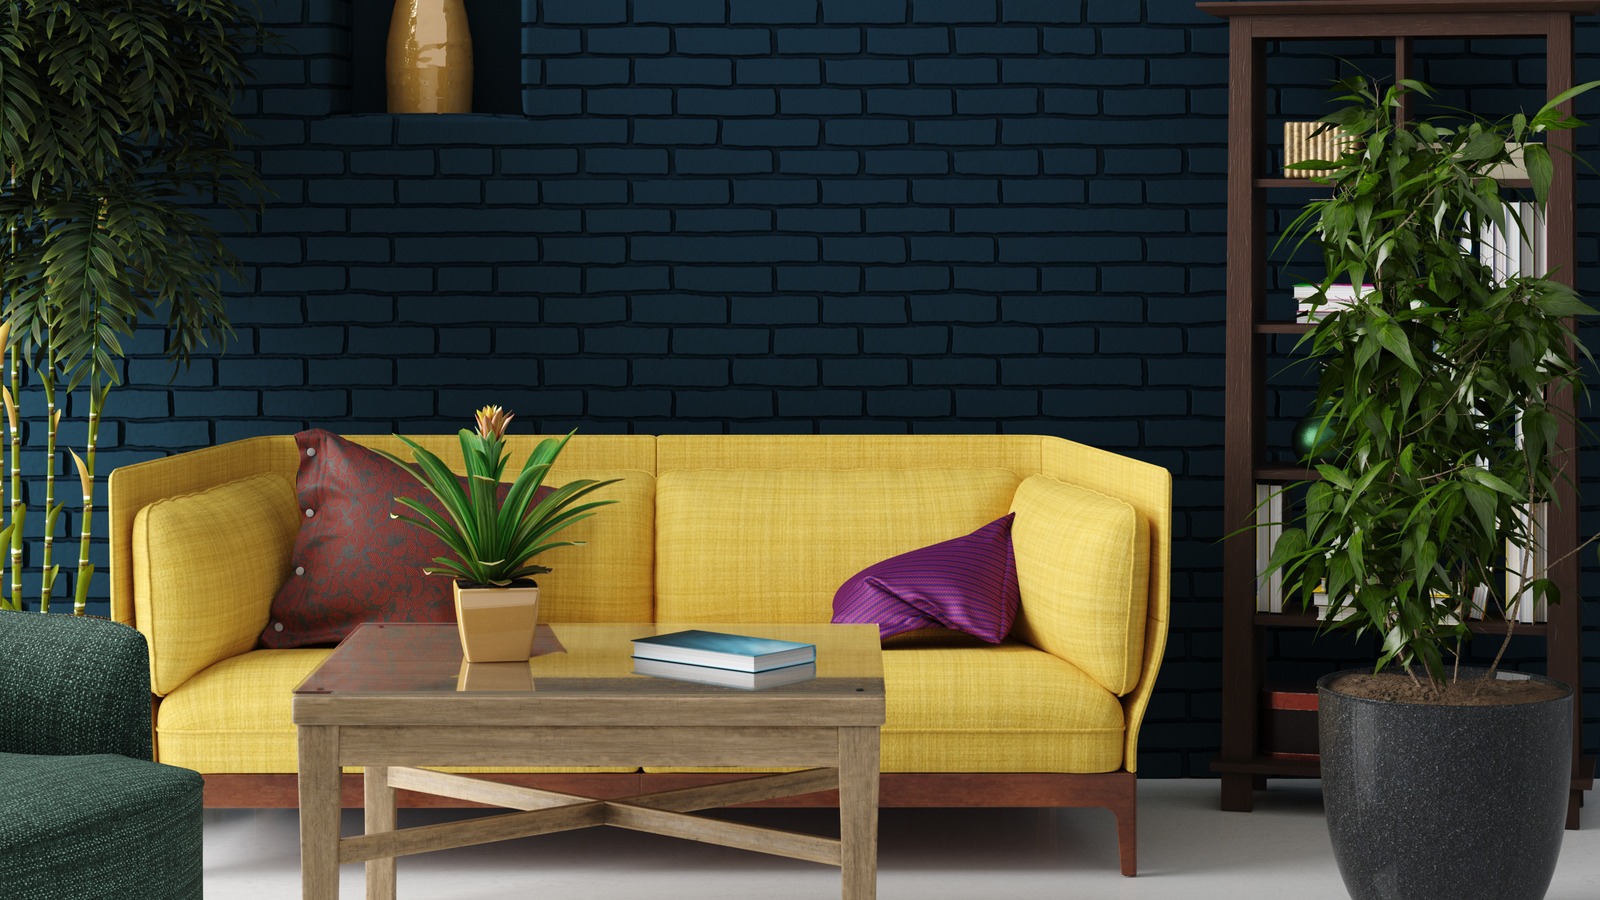 Living room décor ideas to inspire you